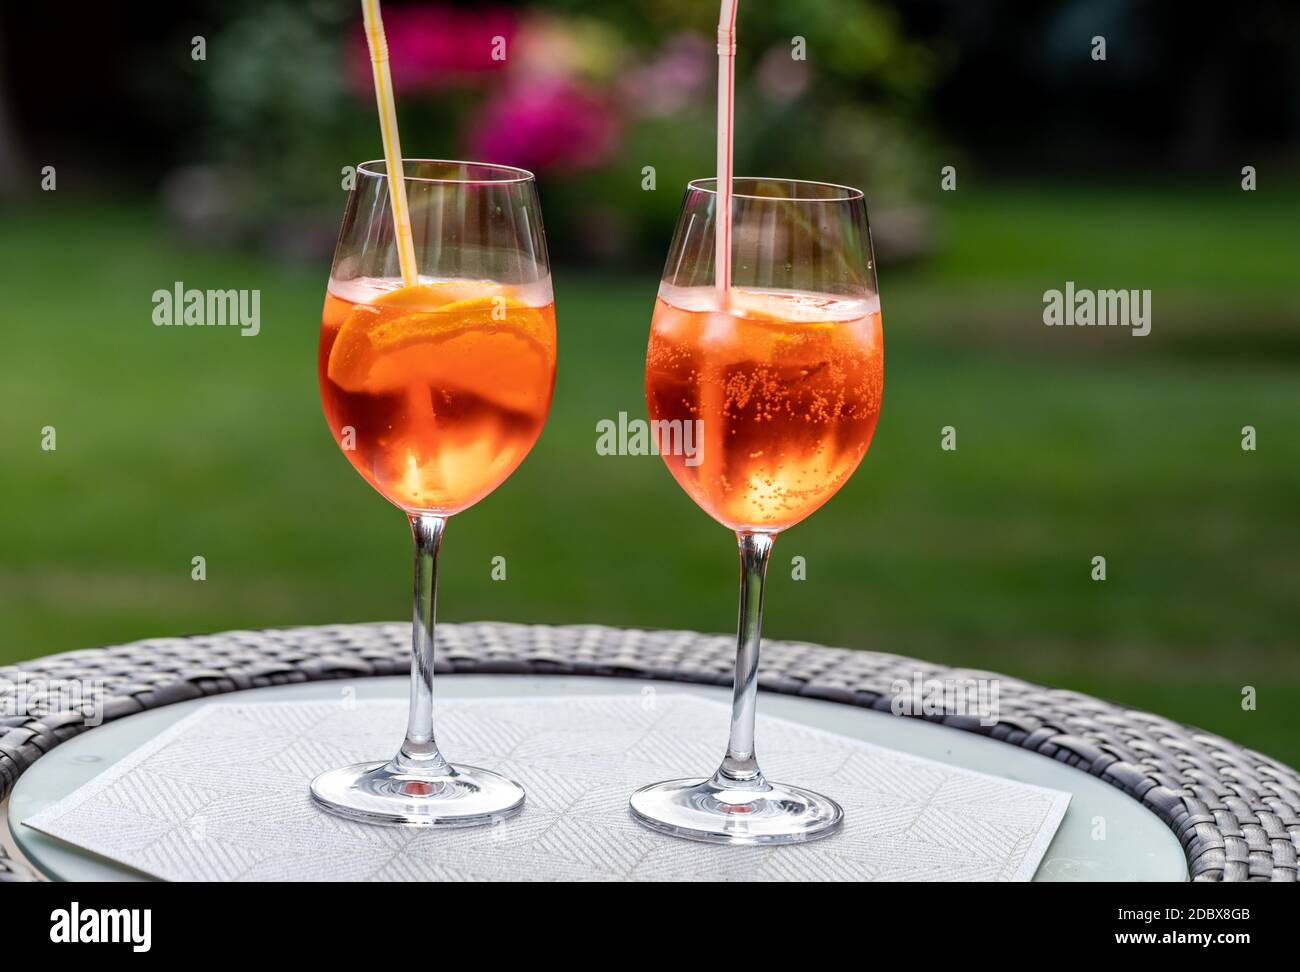 Aperol Spritz mit Orange ist ein perfekter Aperitif für einen Heißer Tag  Stockfotografie - Alamy